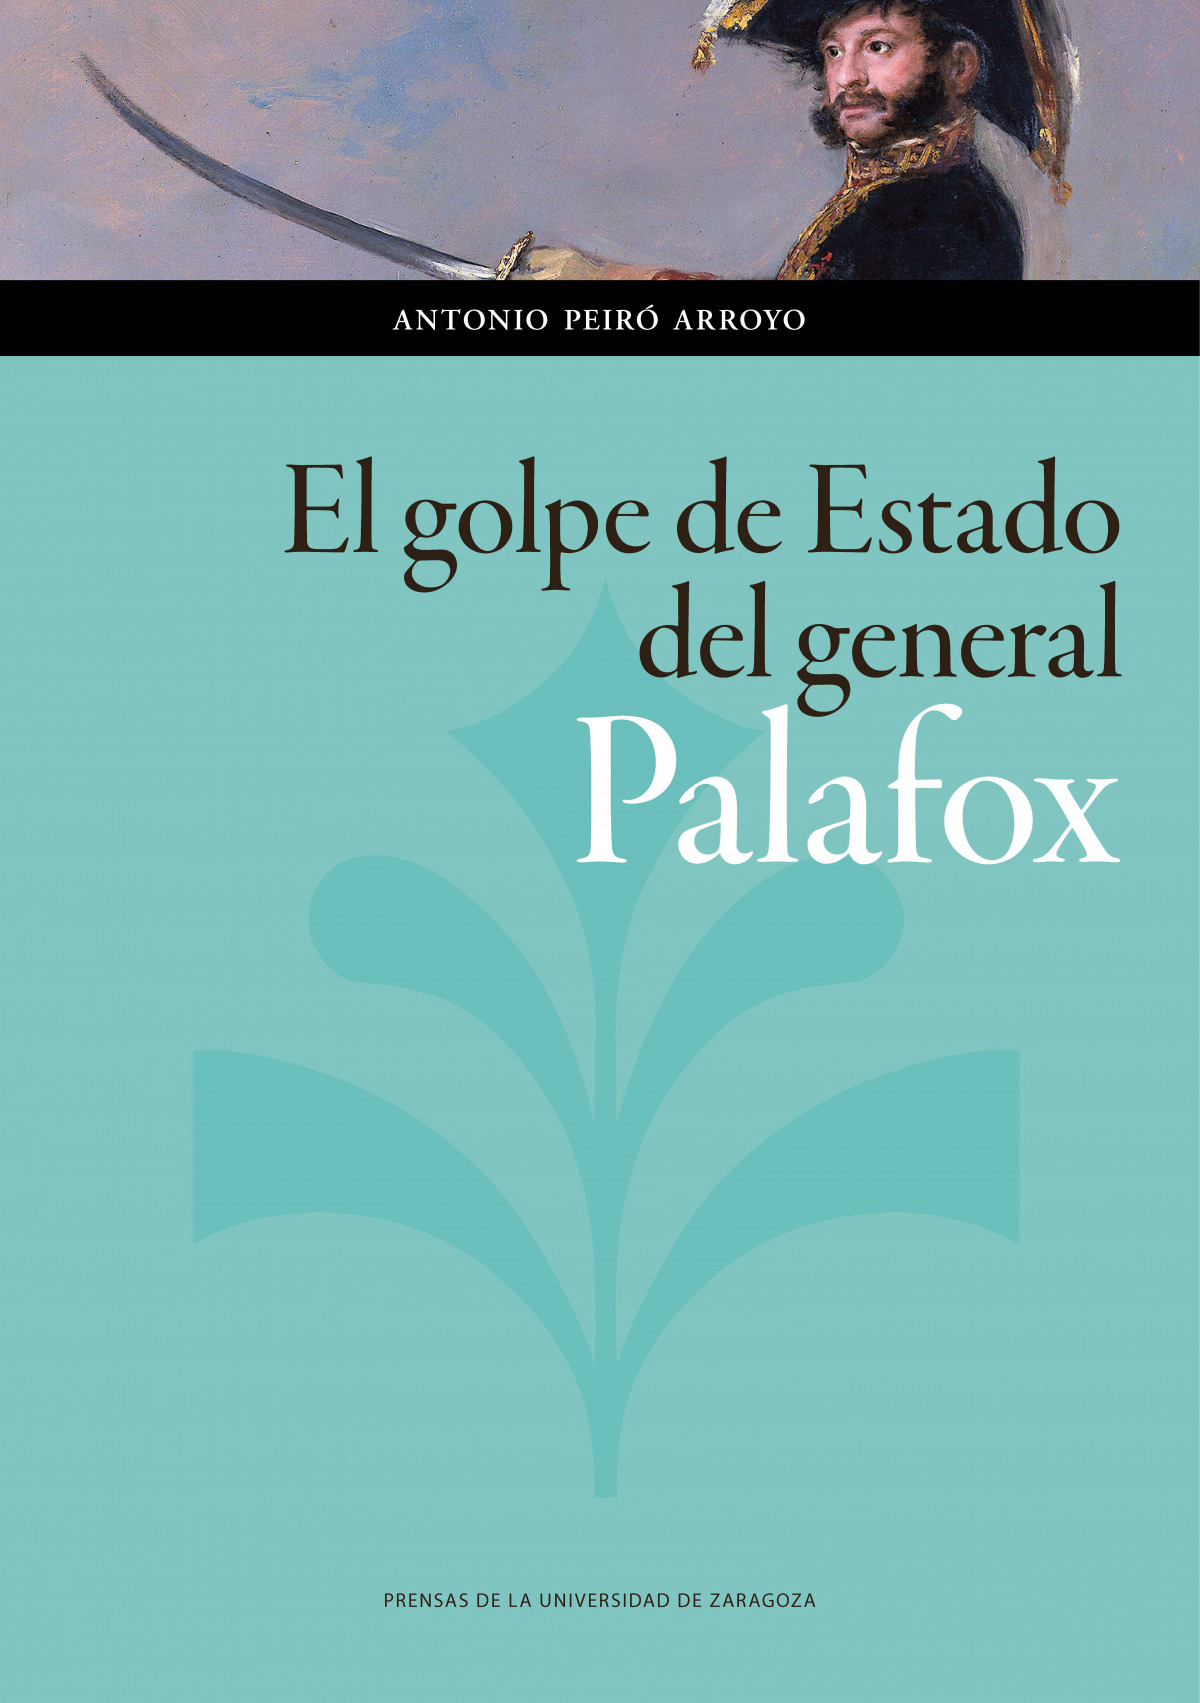 El golpe de estado del general palafox - Antonio, Peiro Arroyo